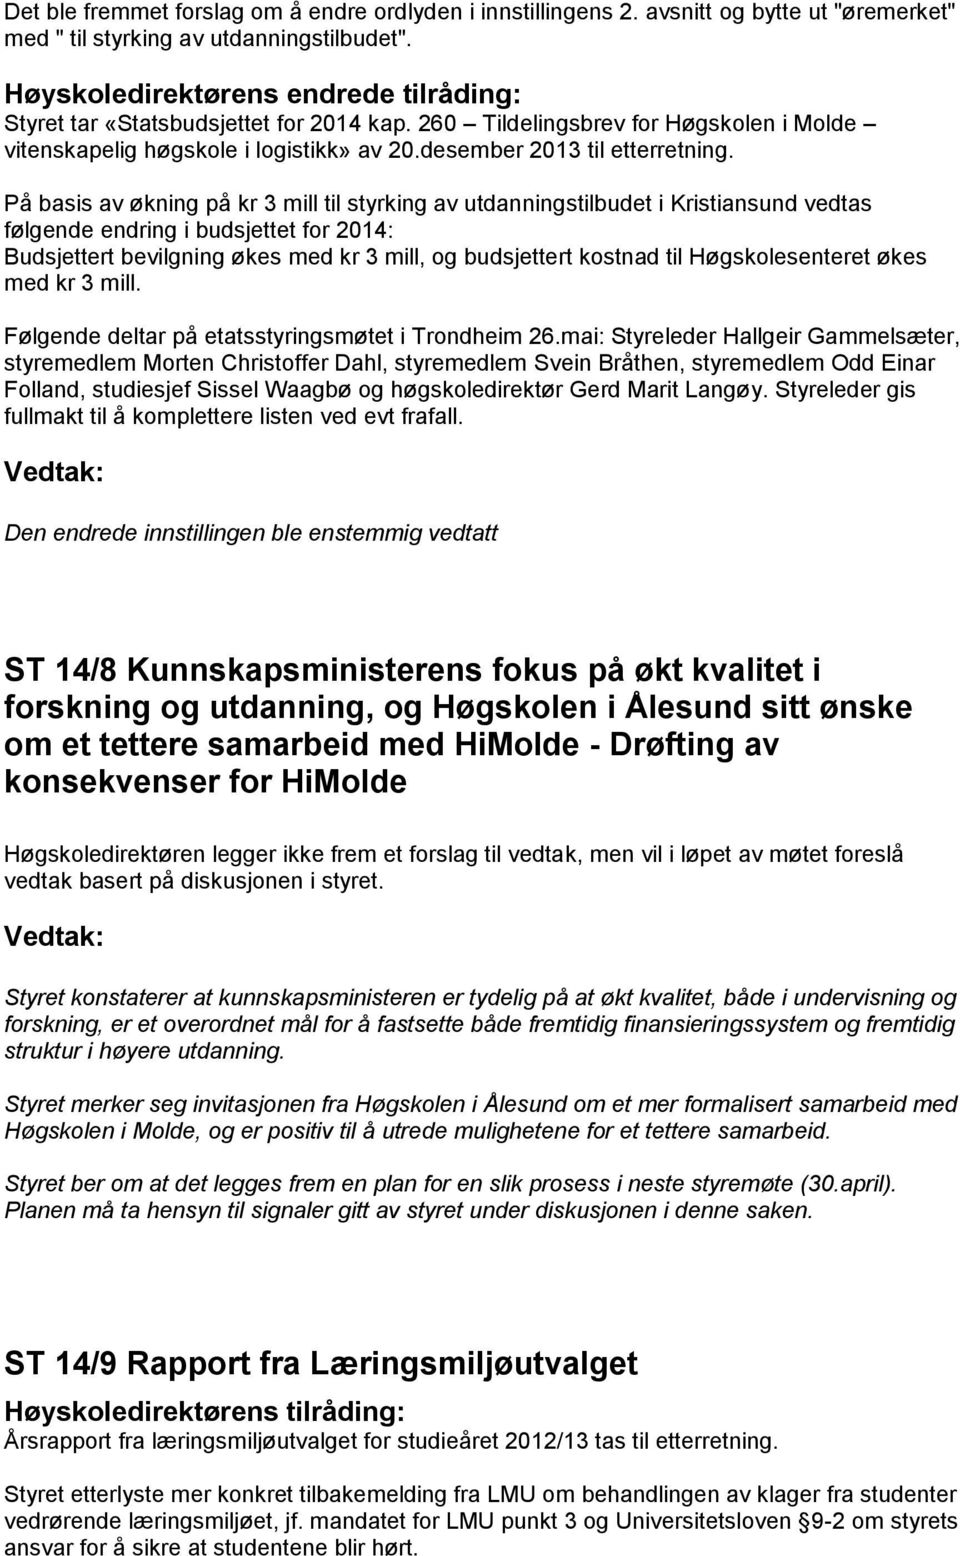 På basis av økning på kr 3 mill til styrking av utdanningstilbudet i Kristiansund vedtas følgende endring i budsjettet for 2014: Budsjettert bevilgning økes med kr 3 mill, og budsjettert kostnad til